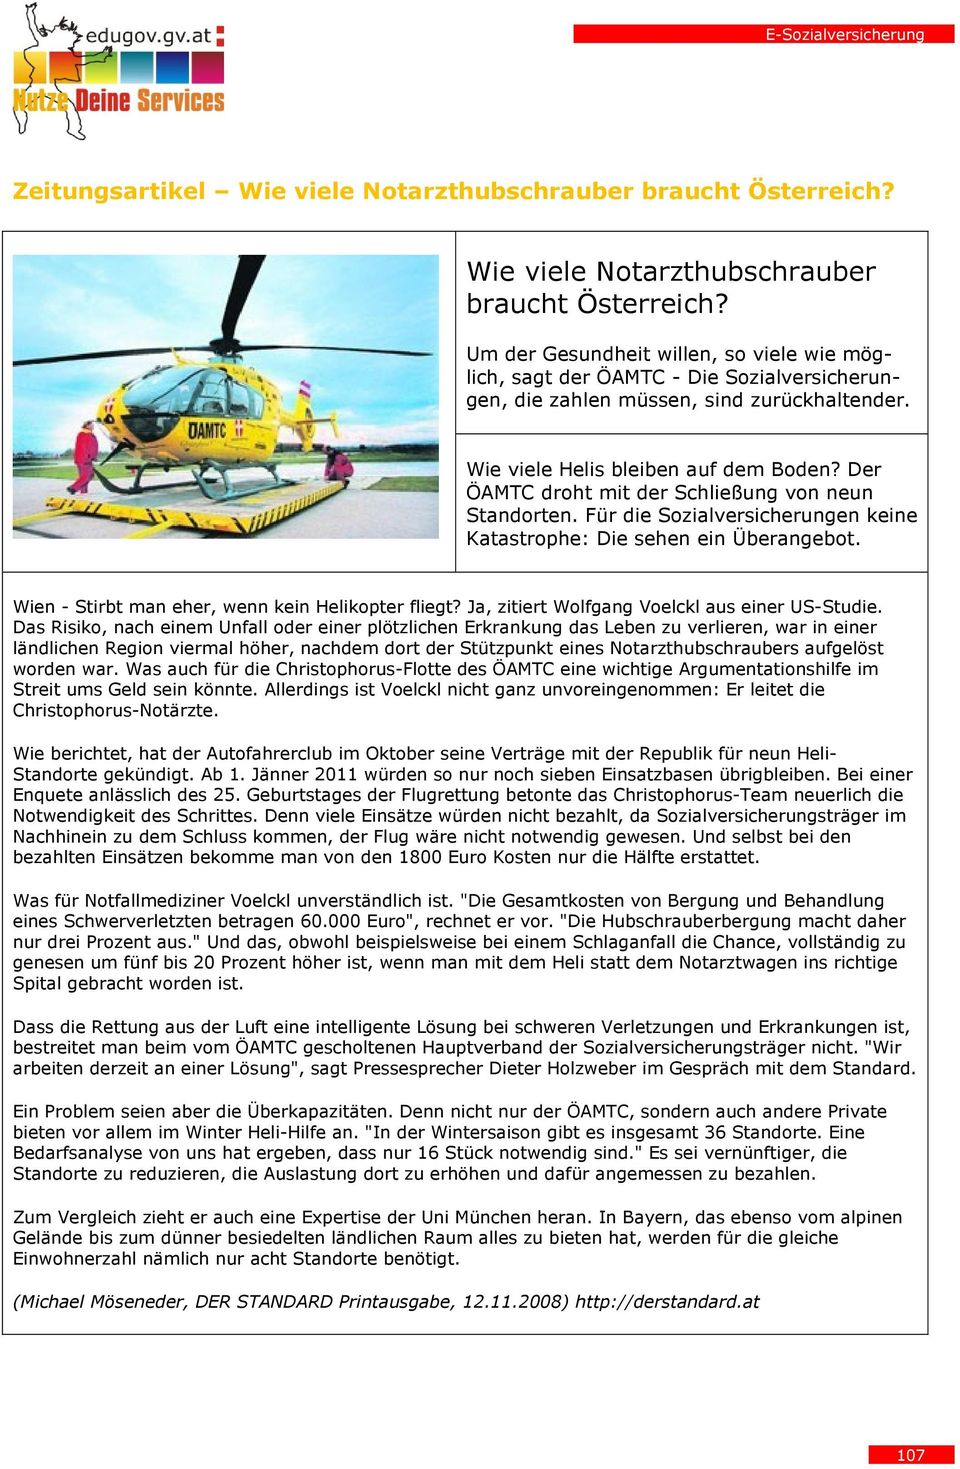 Wien - Stirbt man eher, wenn kein Helikopter fliegt? Ja, zitiert Wolfgang Voelckl aus einer US-Studie.